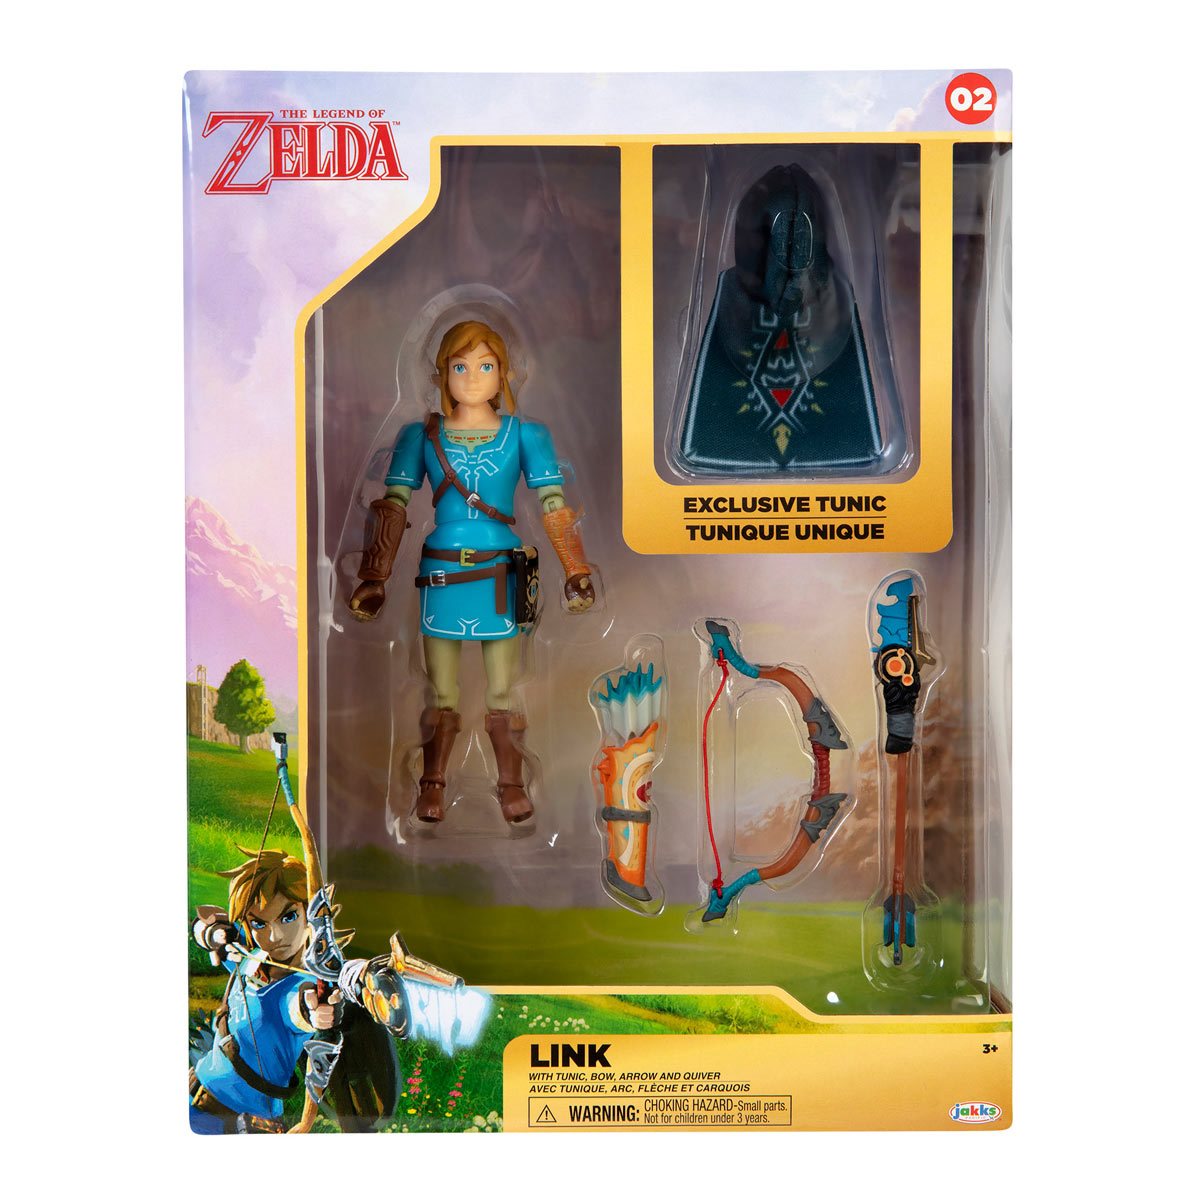 The Legend of Zelda: Breath of the Wild Zelda (S) Plush Toy// Nintendo 